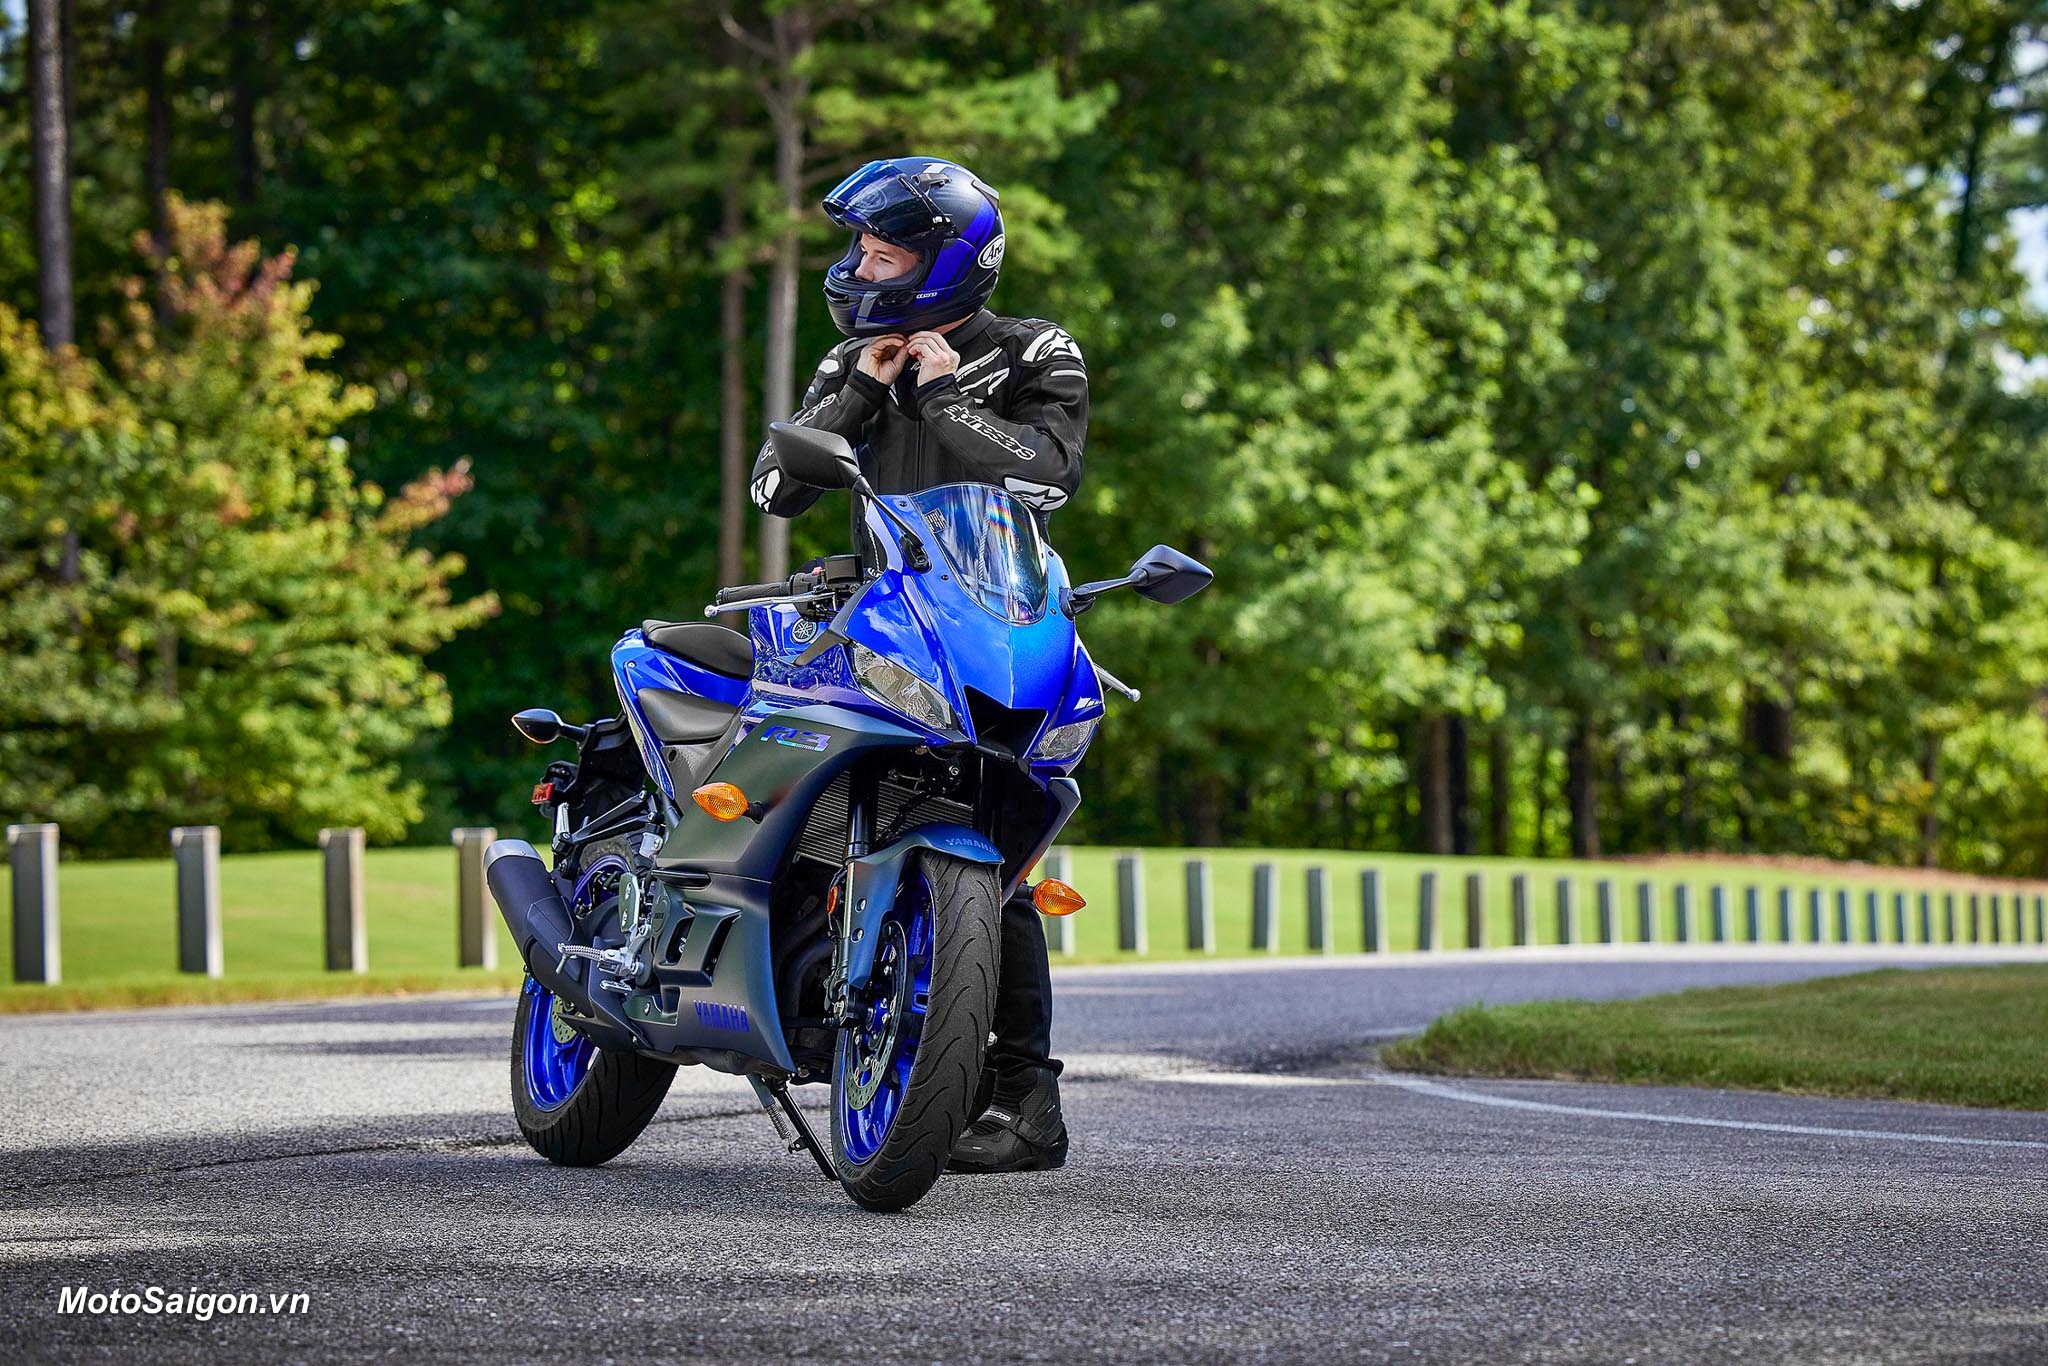 Yamaha bác thông tin xe môtô R3 trang bị động cơ 4 xy lanh